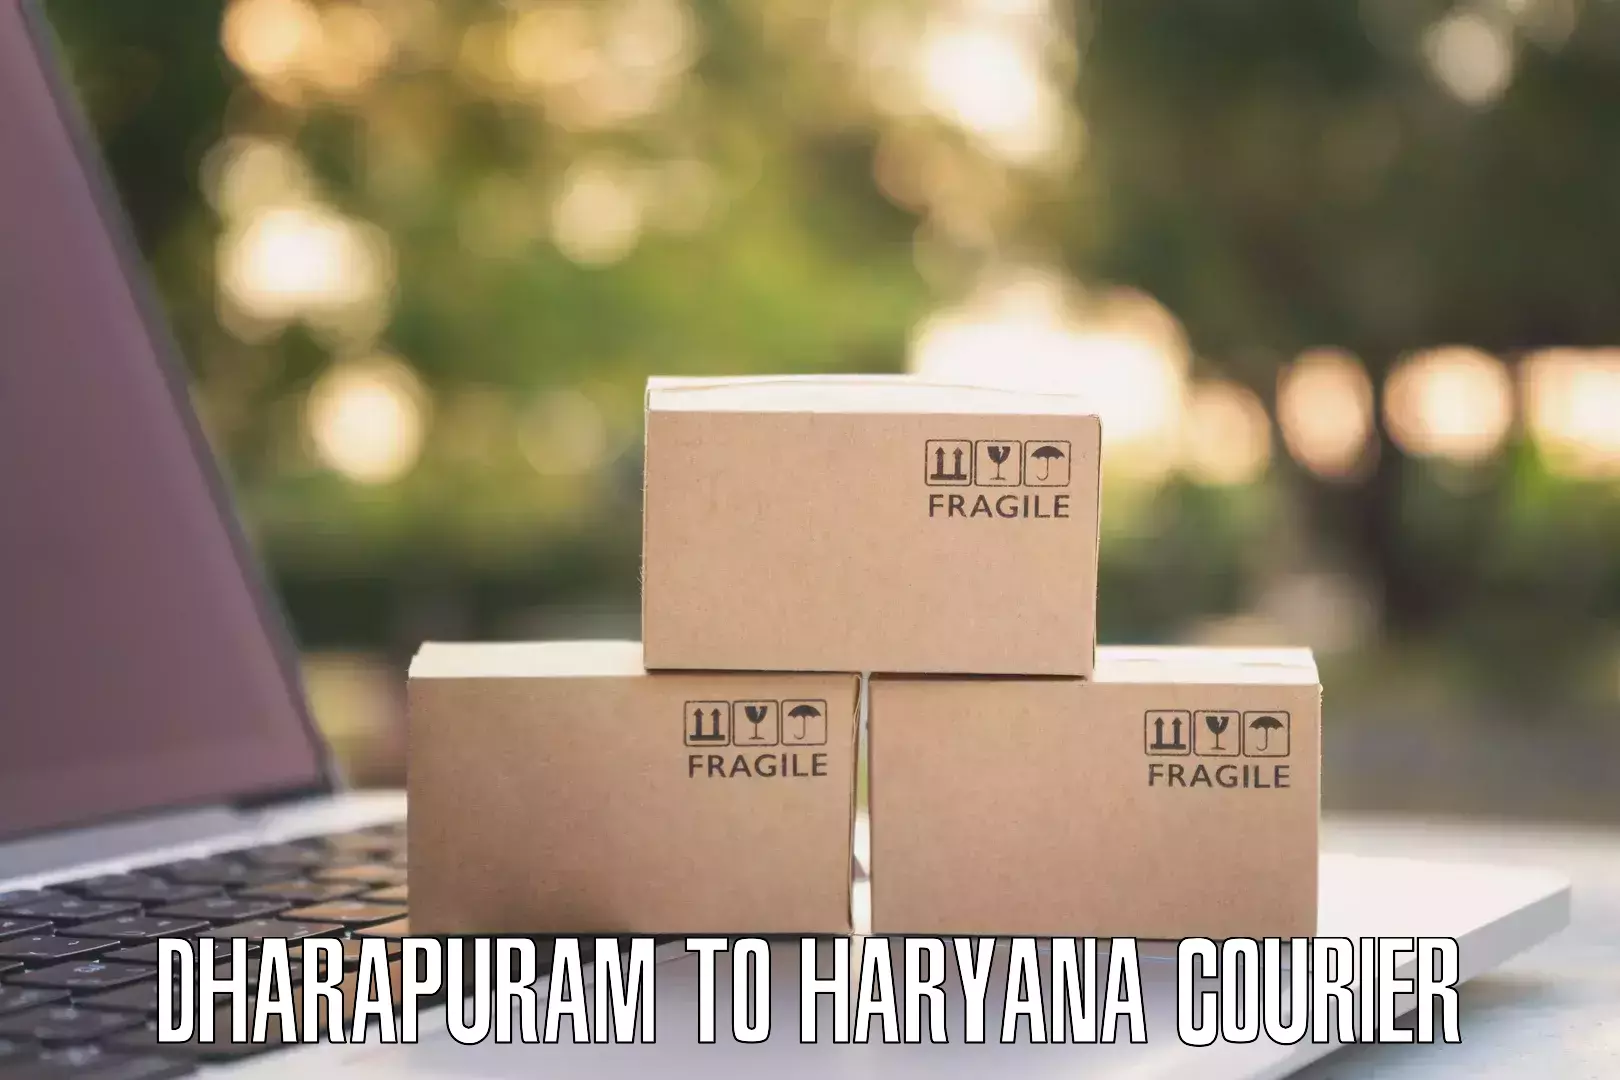 Advanced courier platforms Dharapuram to Gohana